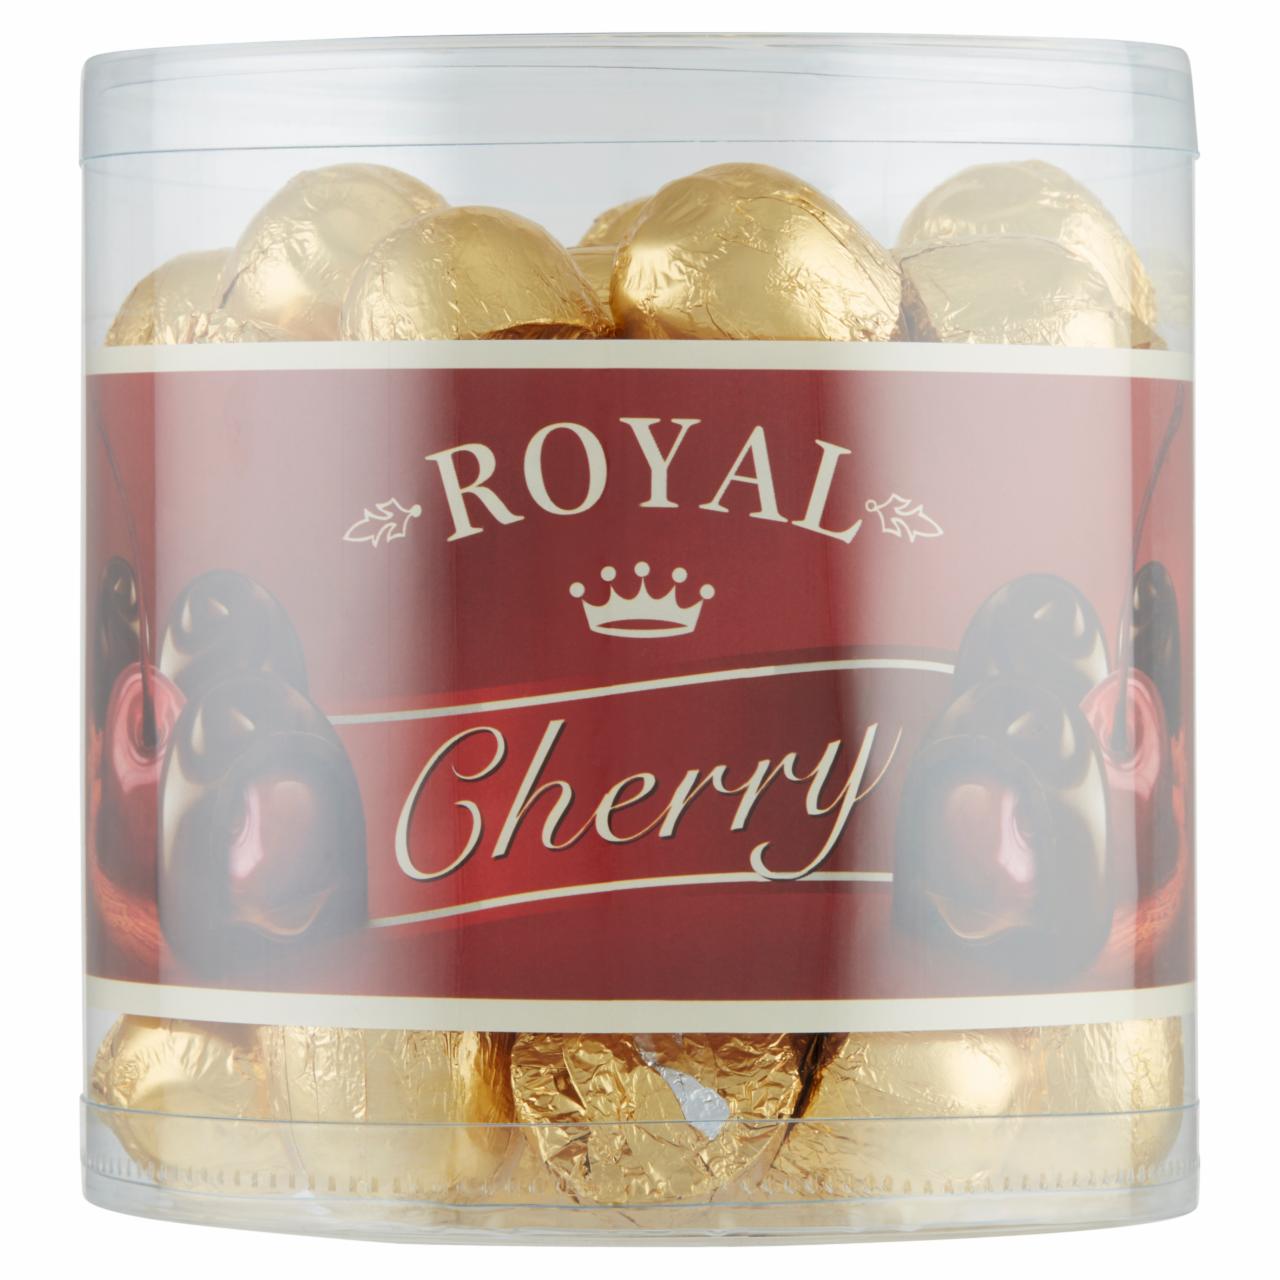 Képek - Royal Cherry konyakmeggy 800 g